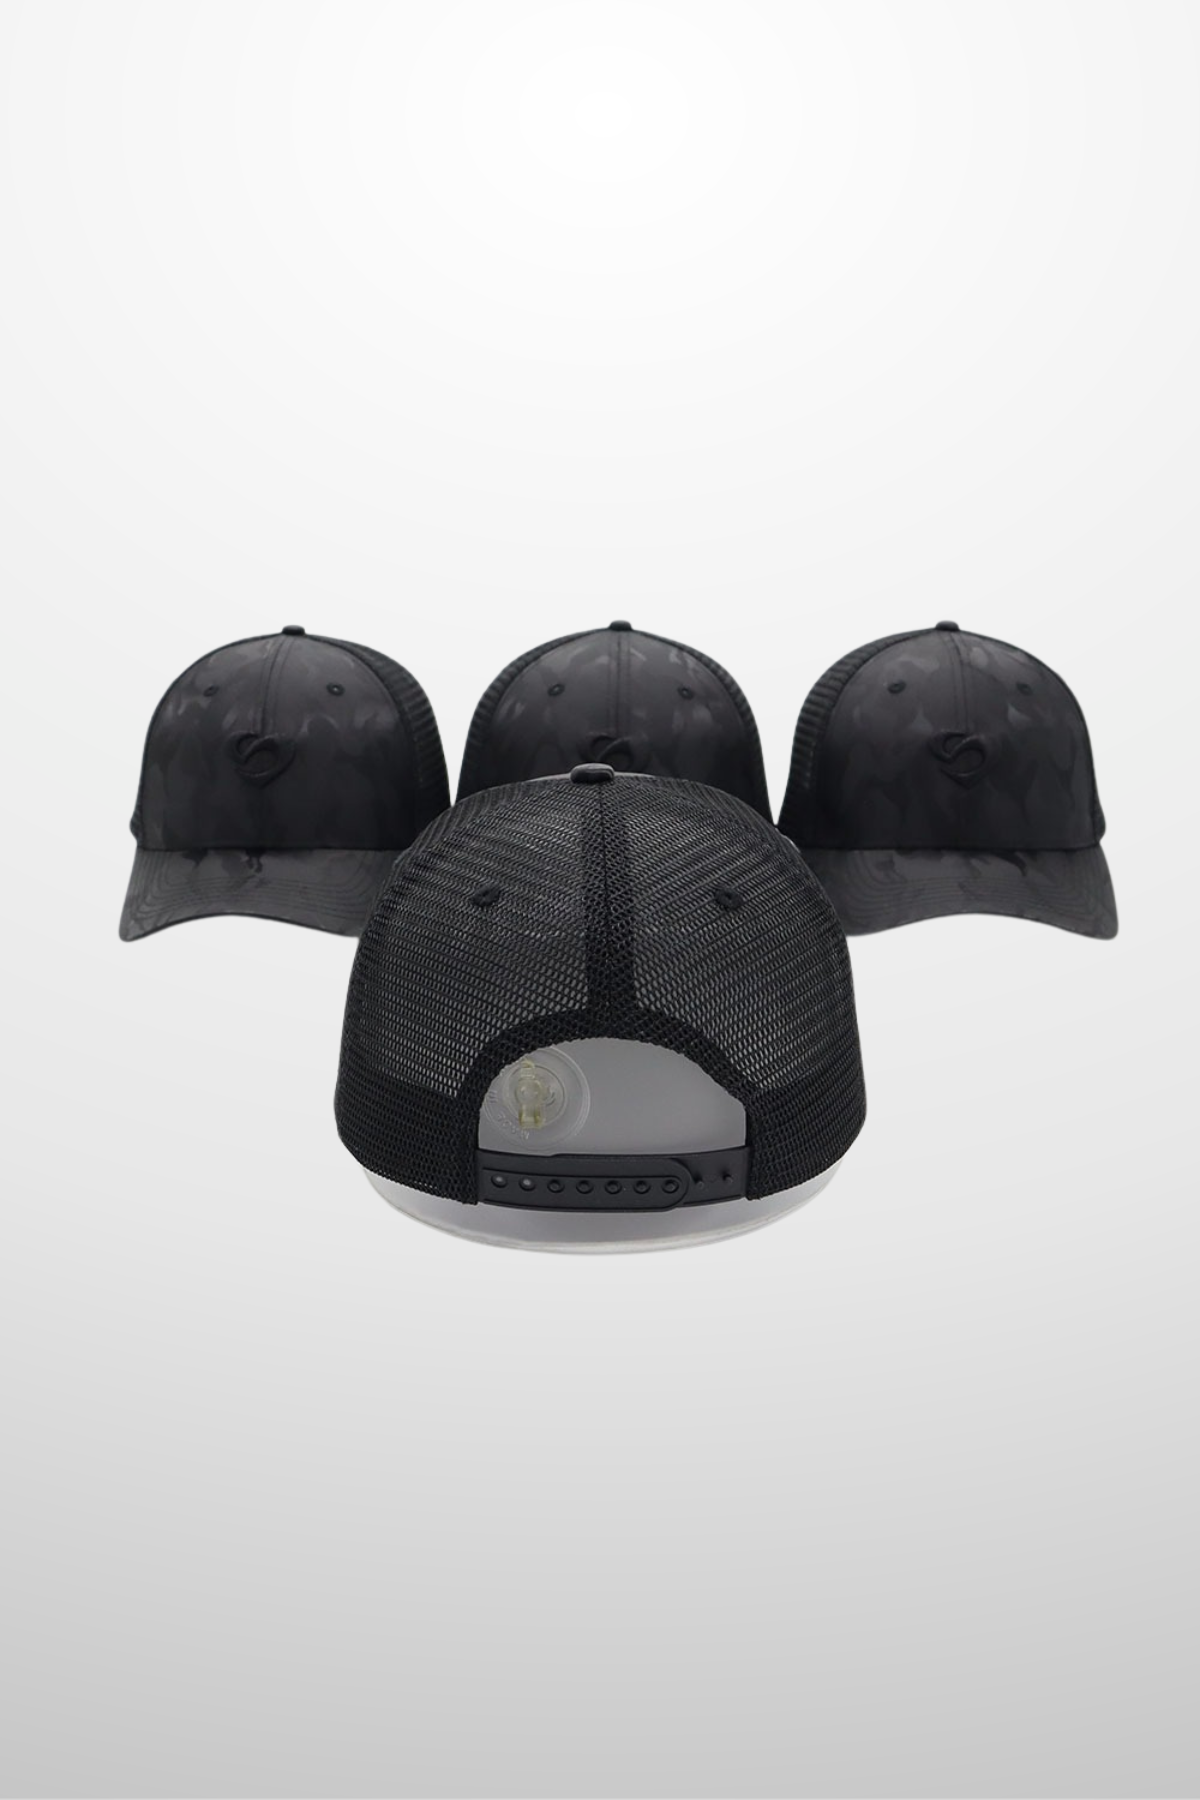 Black Camo Cap with adjustable strap